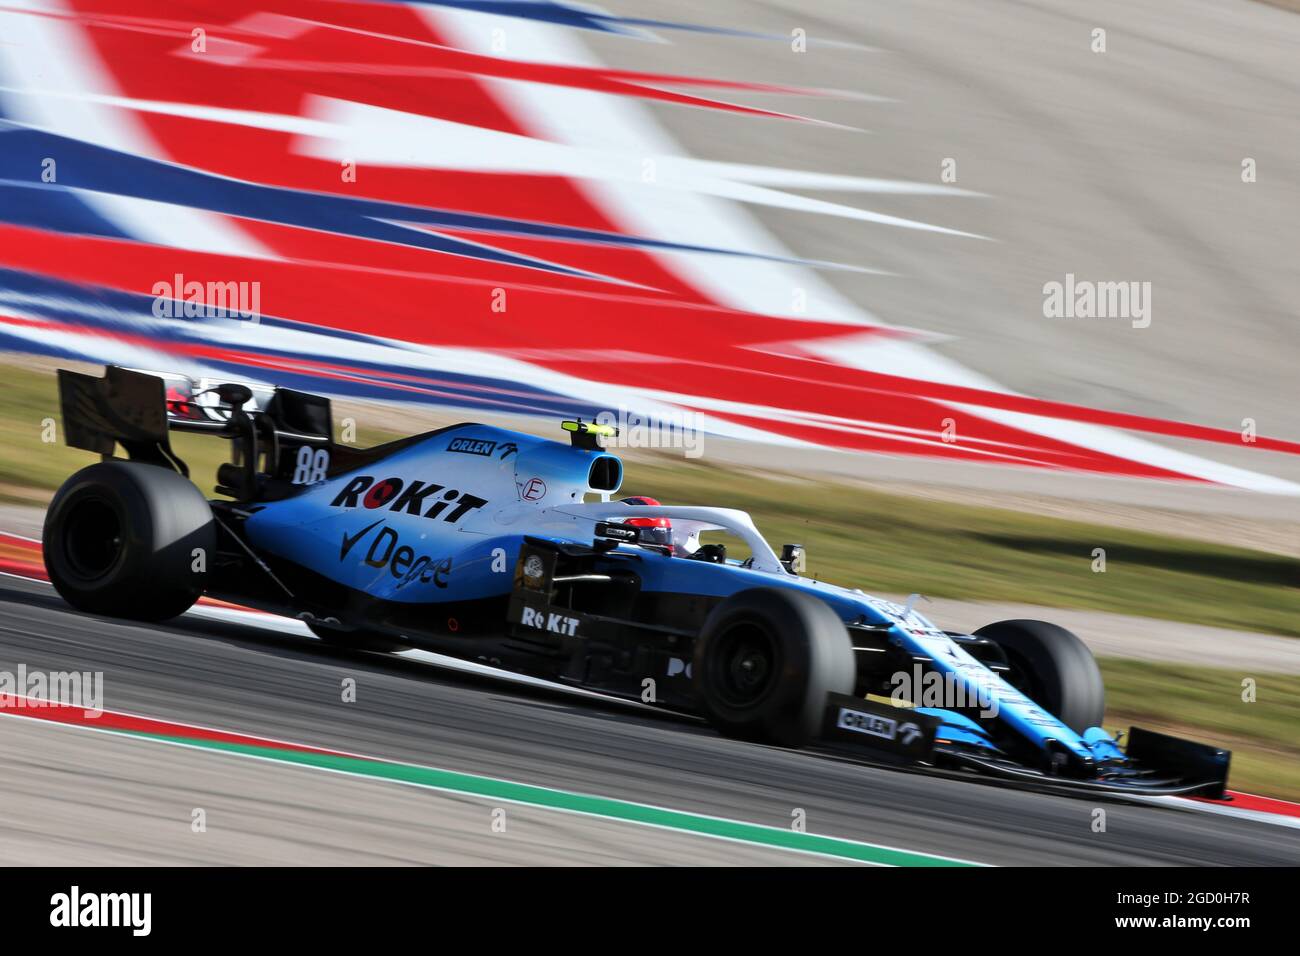 Kubica (POL) Williams Racing Gran Premio de los Estados Unidos, viernes 1st de noviembre de 2019. Circuito de las Américas, Austin, Texas, Estados Unidos Fotografía de stock - Alamy